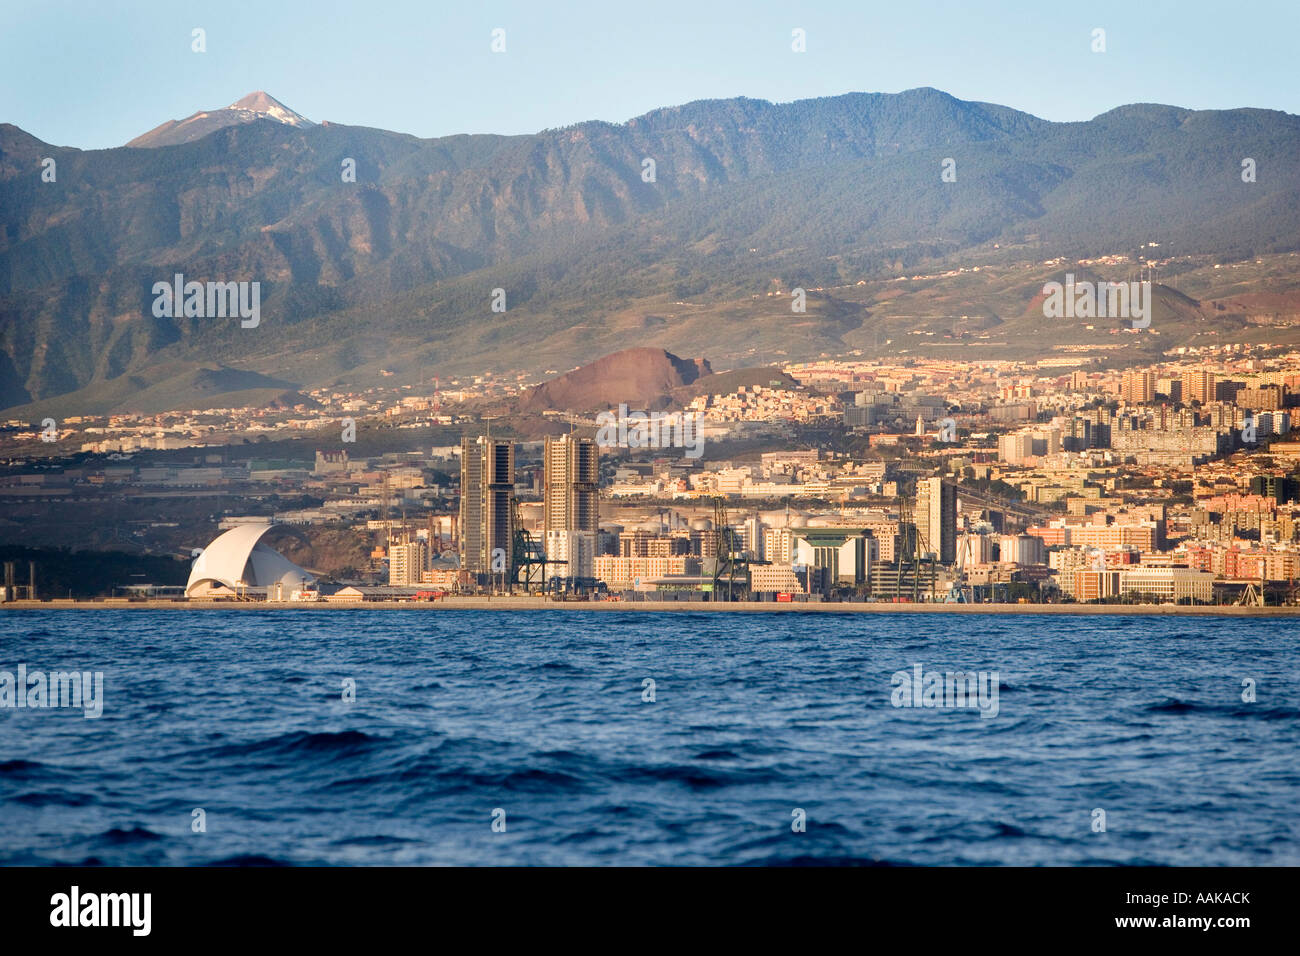 La città di Santa Cruz sull isola di Tenerife nelle Canarie come si vede dall'acqua El Teide è appena visibile Foto Stock